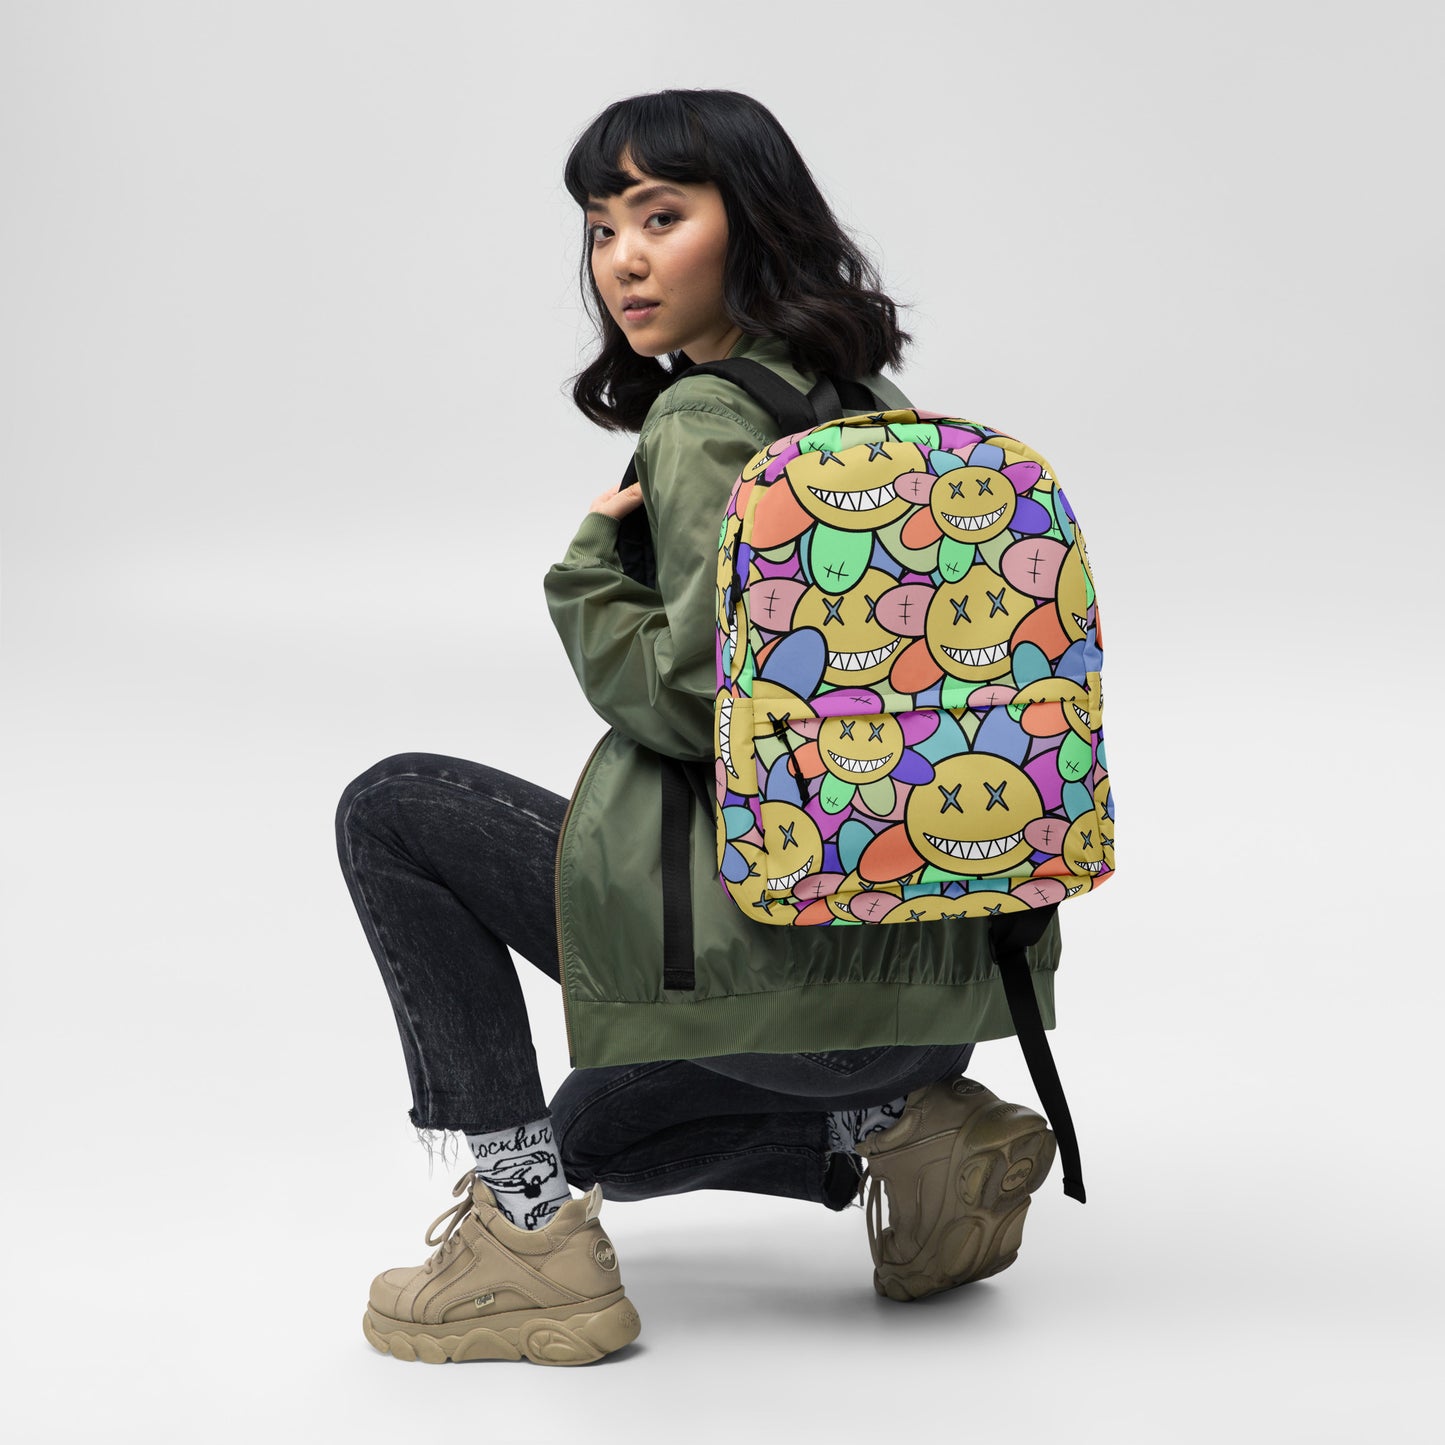 Crazy Florals - Backpack